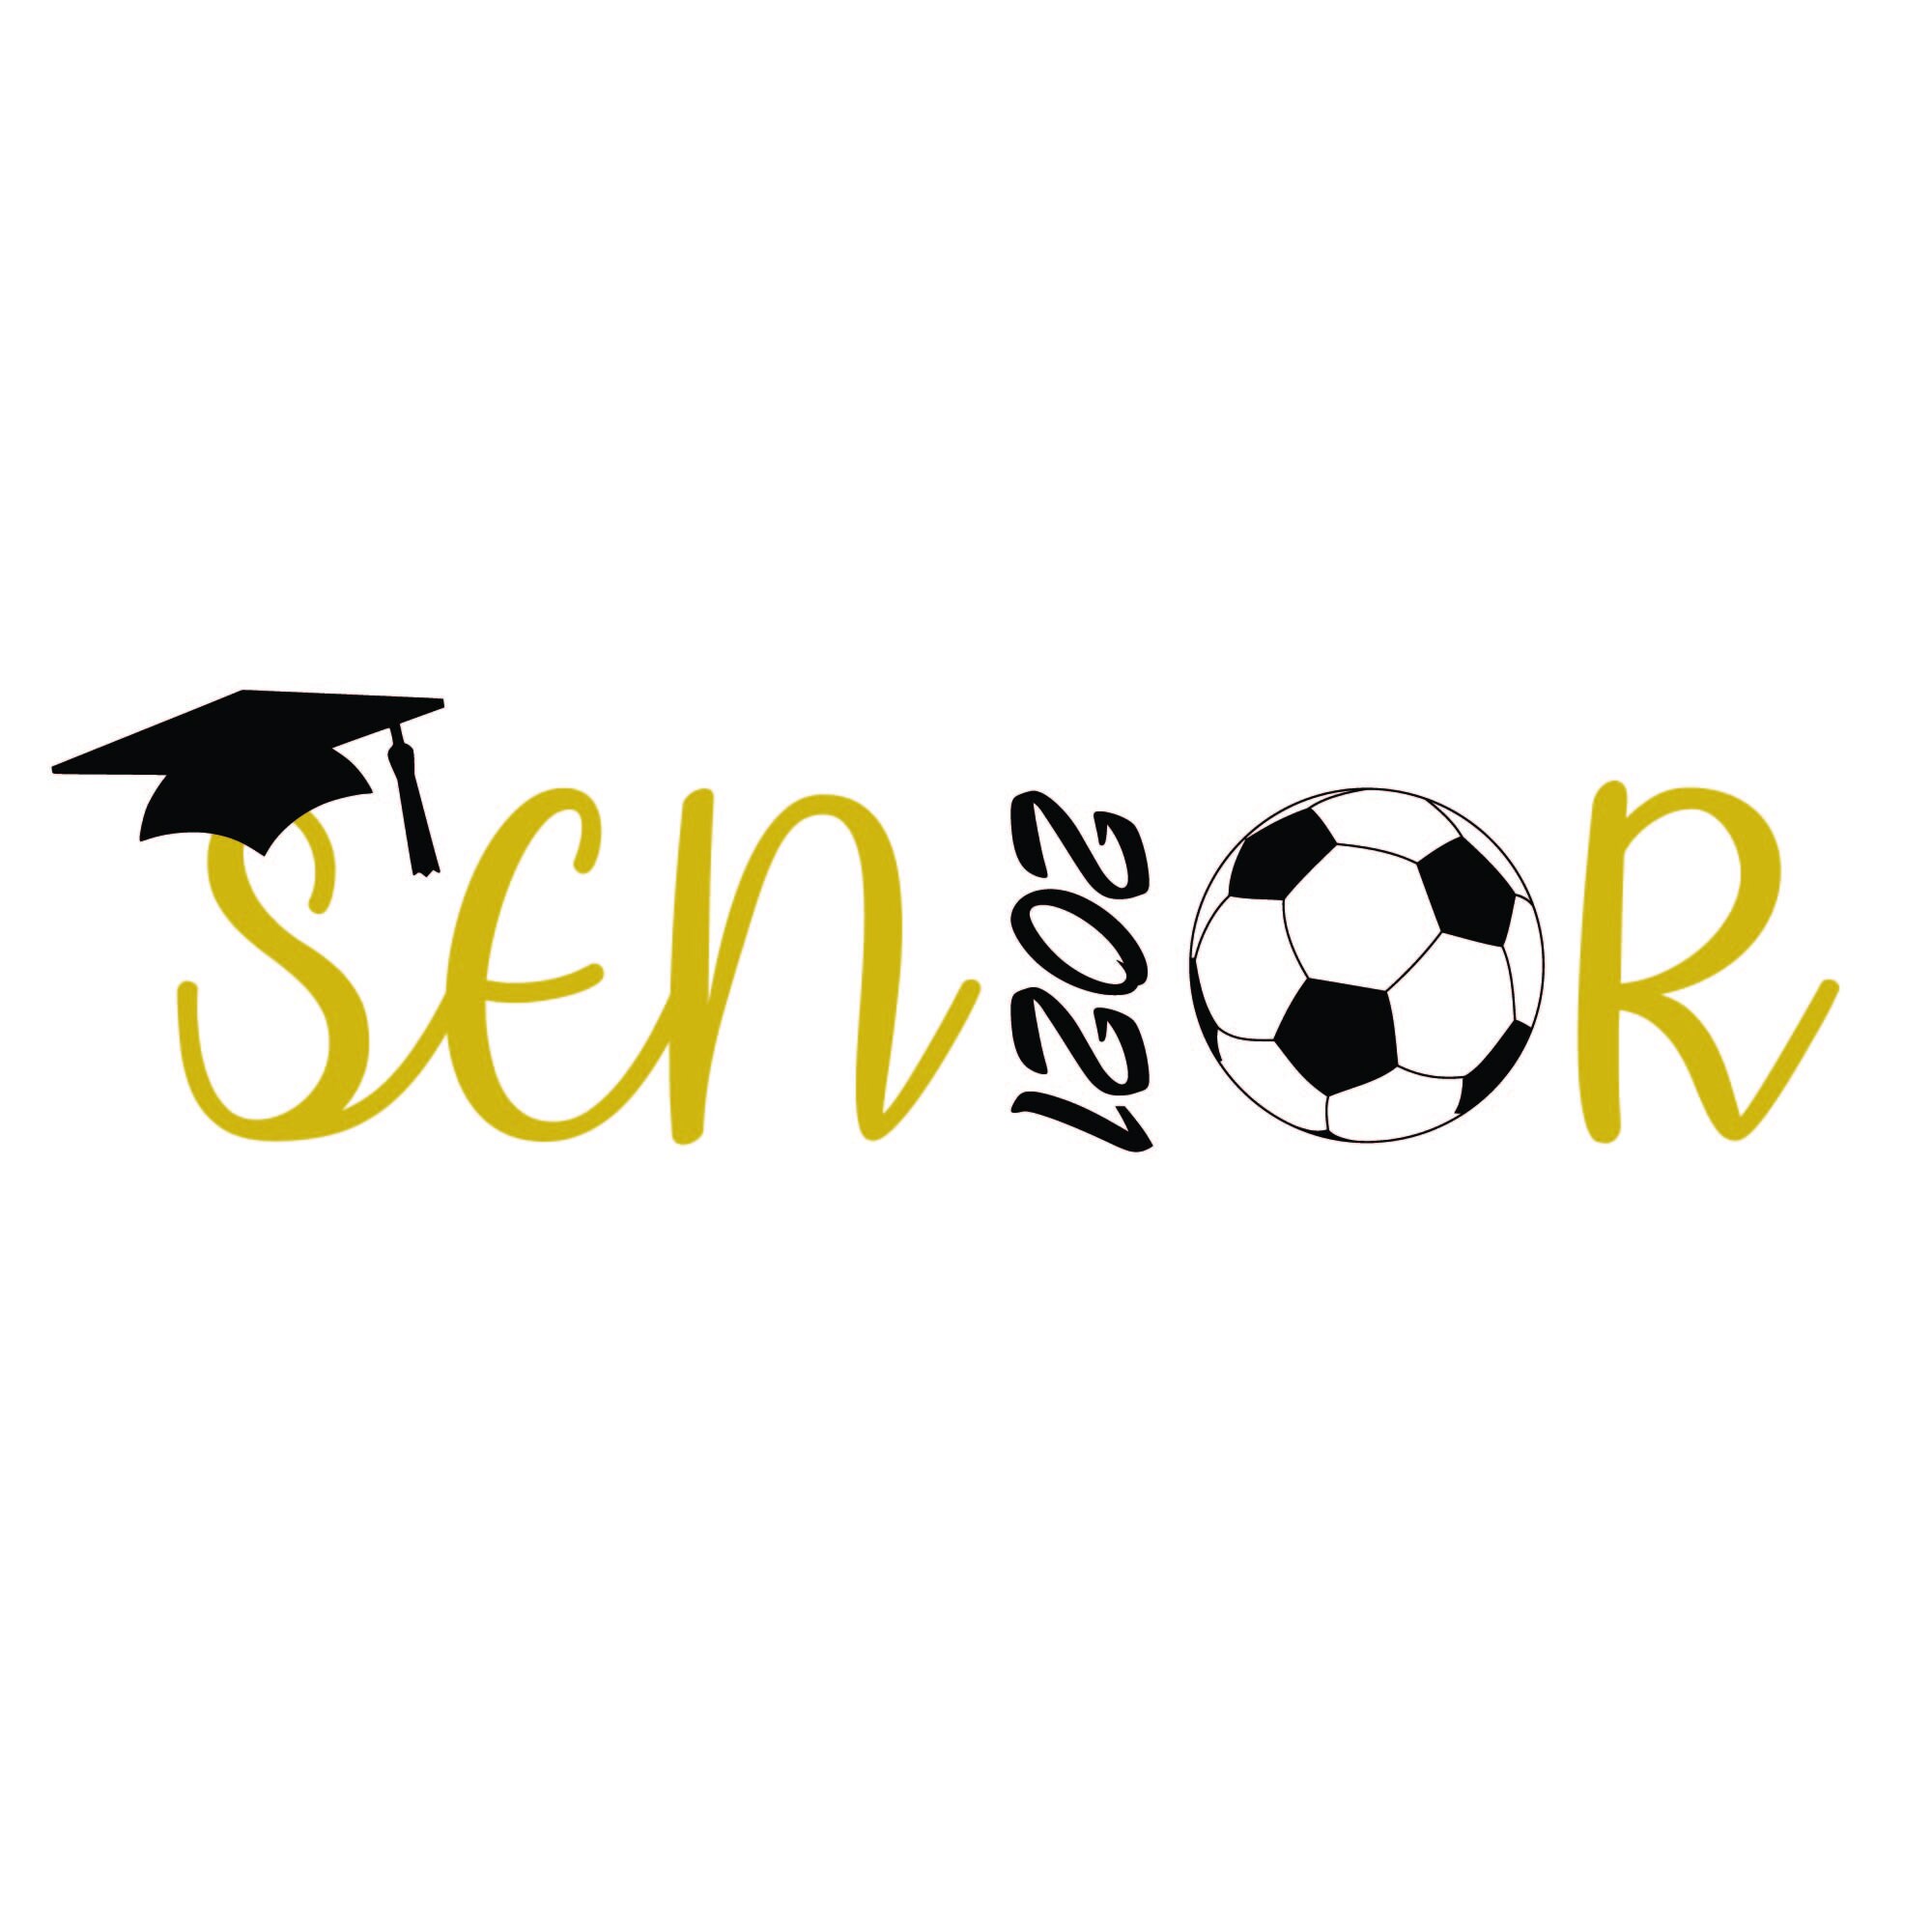 Download Senior Soccer Ball 2021 Senior 2021 Svg Graduation Svg Etsy